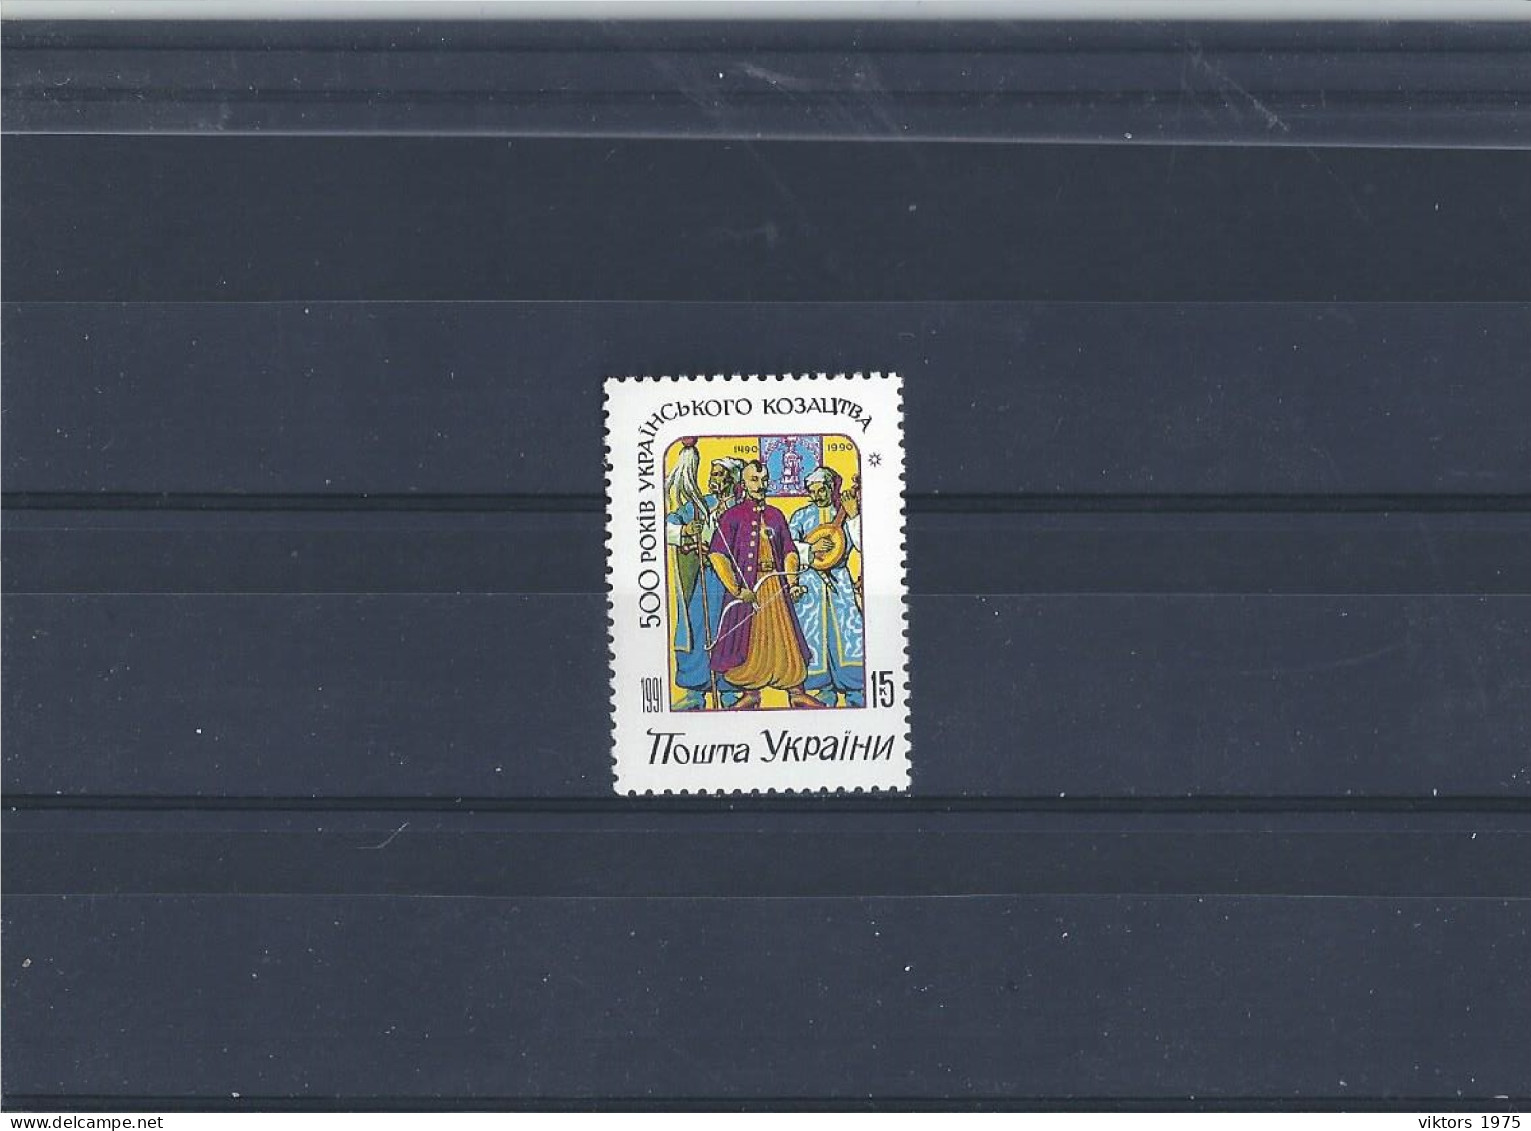 MNH Stamp Nr.71 In MICHEL Catalog - Ukraine